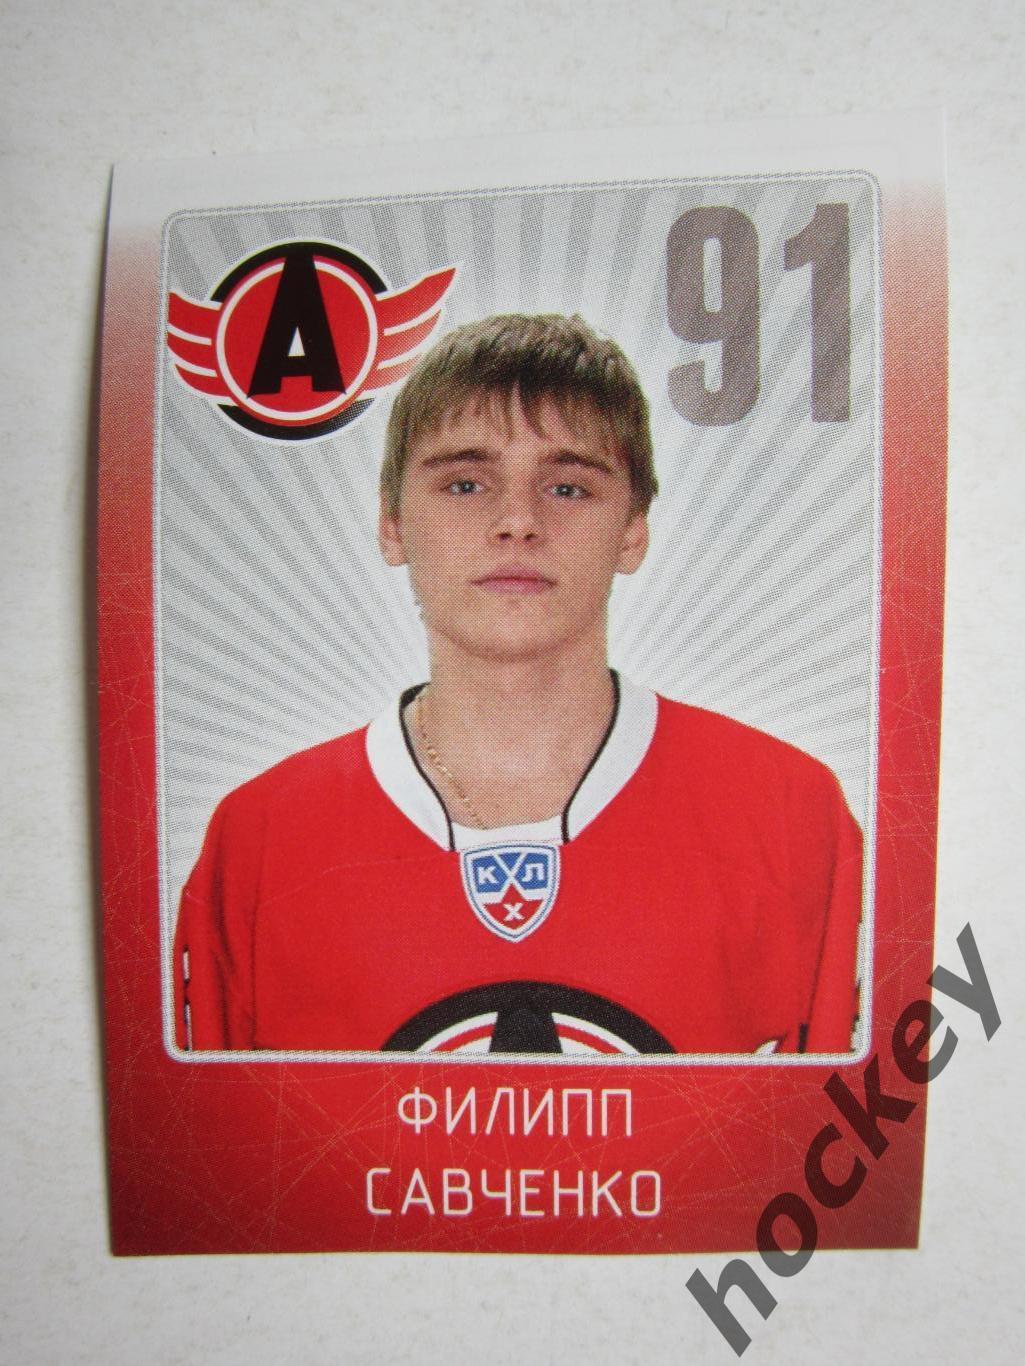 Филипп Савченко (Автомобилист). № 20. Наклейка. SeReal КХЛ 2011/2012.